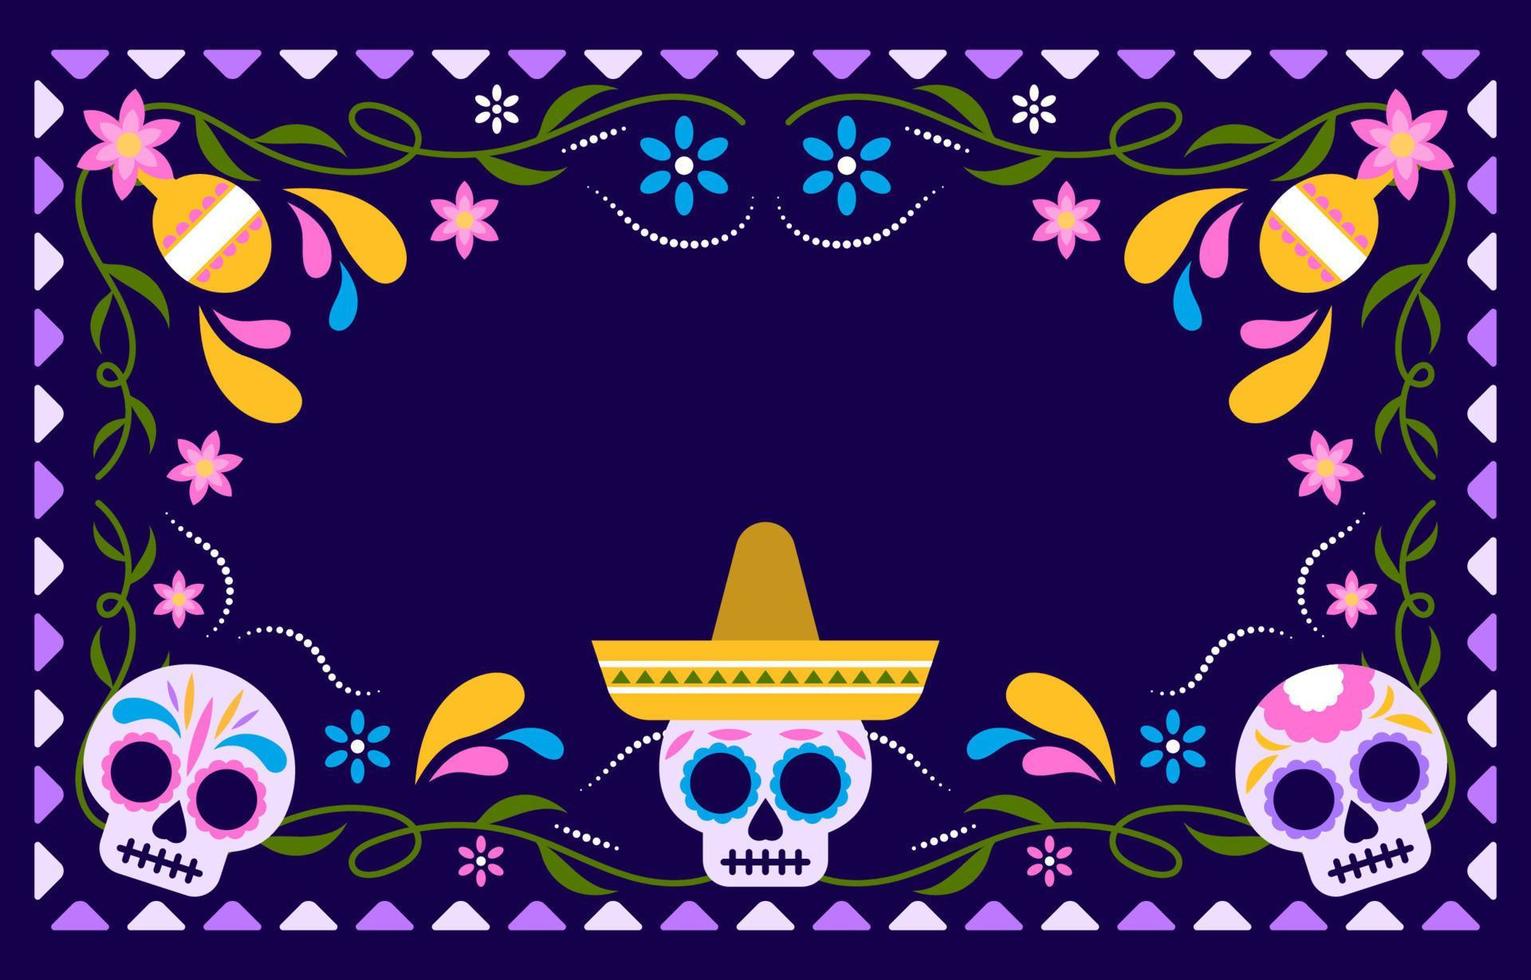 Dia De Los Muertos Calavera Sugar Skull Background vector